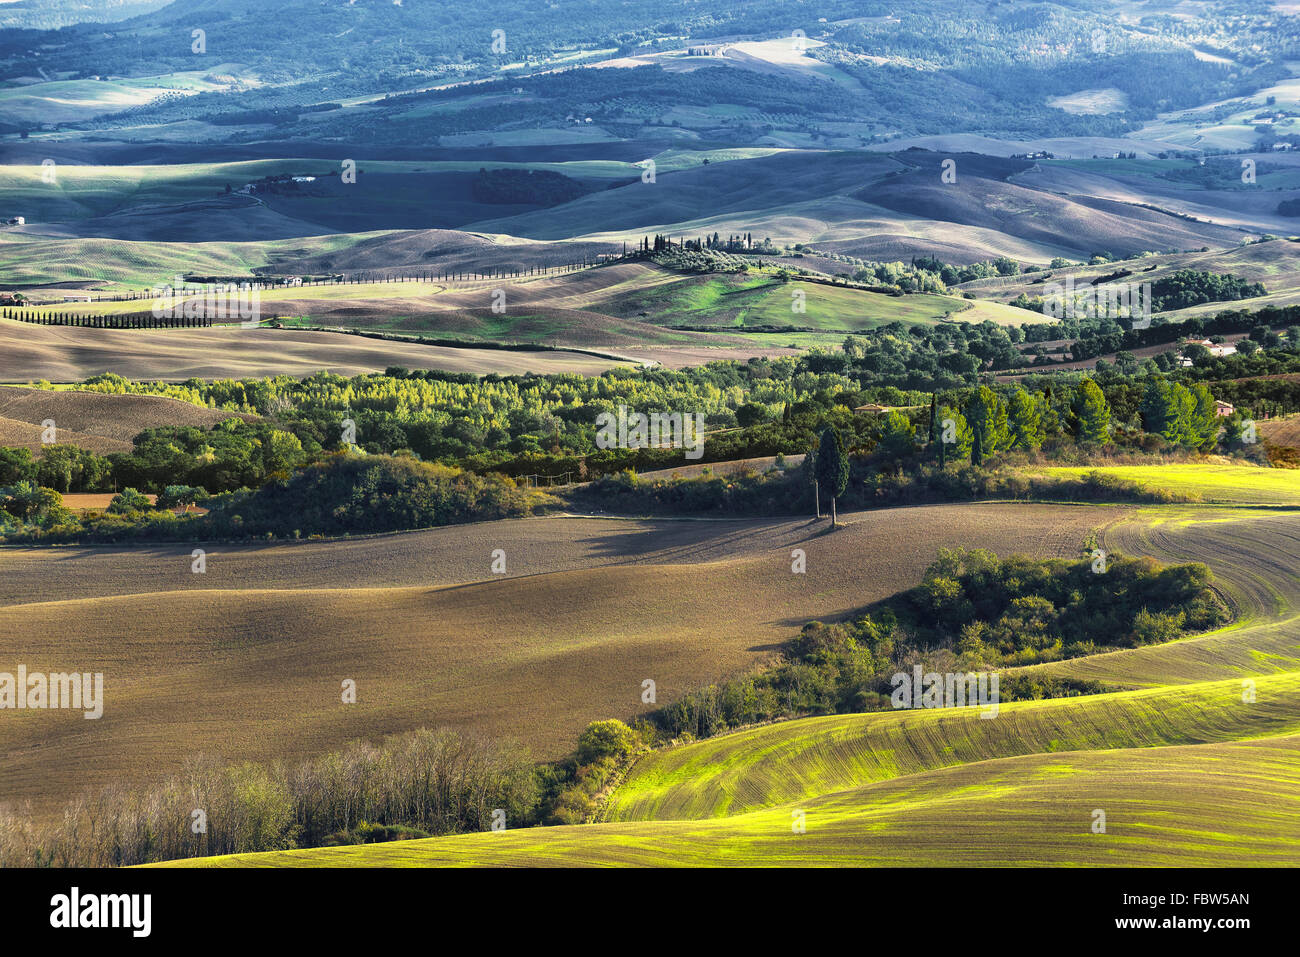 Les champs labourés dans le paysage pittoresque de l'Italie. Paysage de la Toscane. Banque D'Images